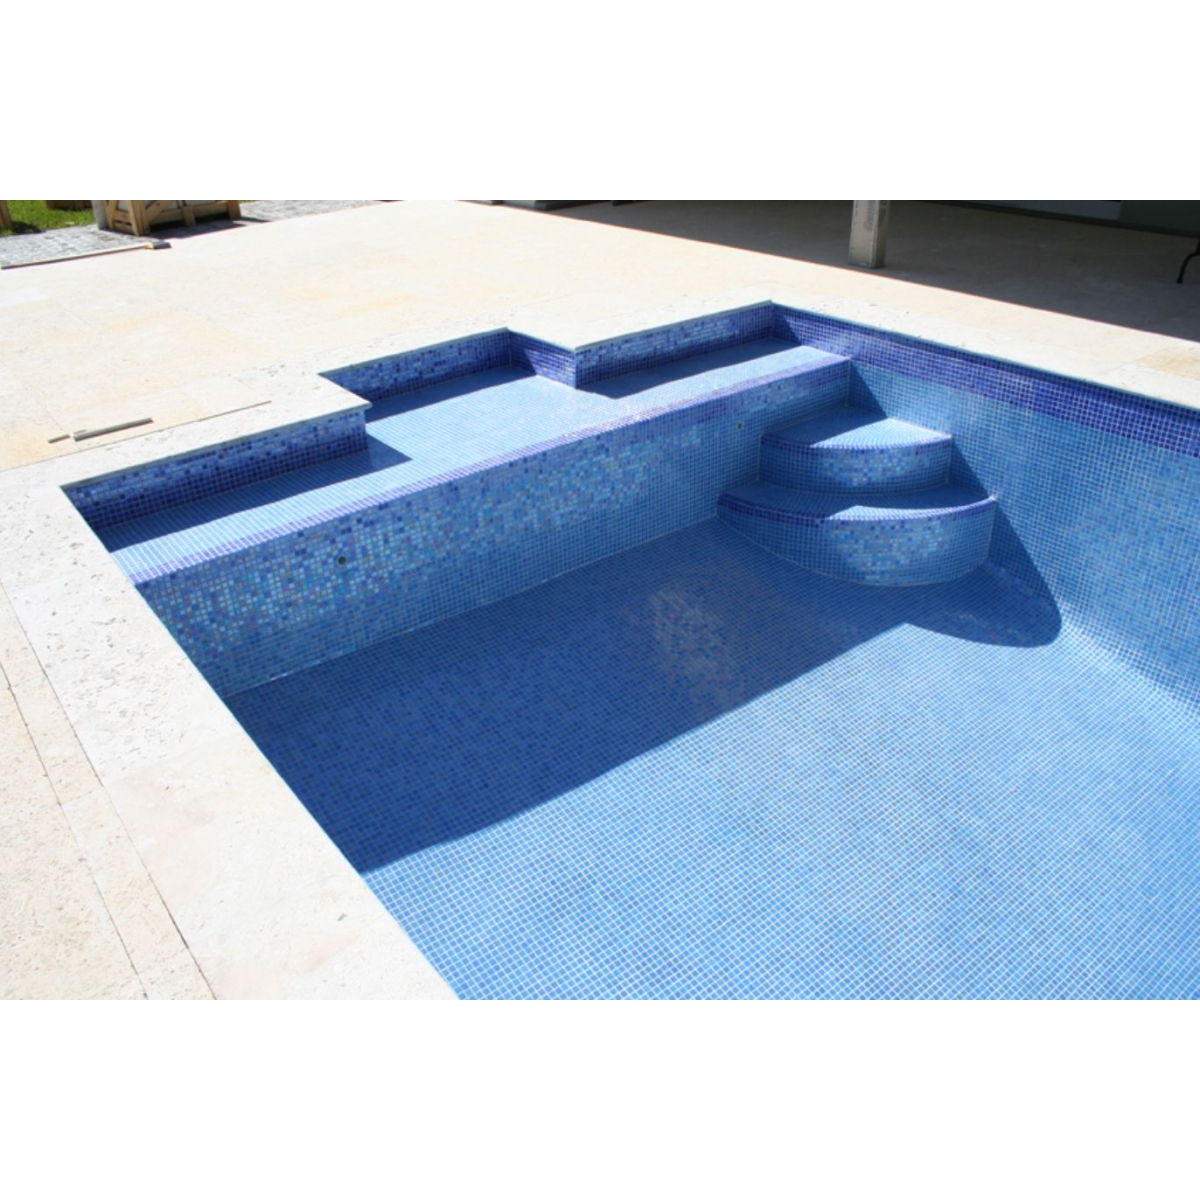 Pormenor da piscina com liner Gresite em tons de azul nebuloso